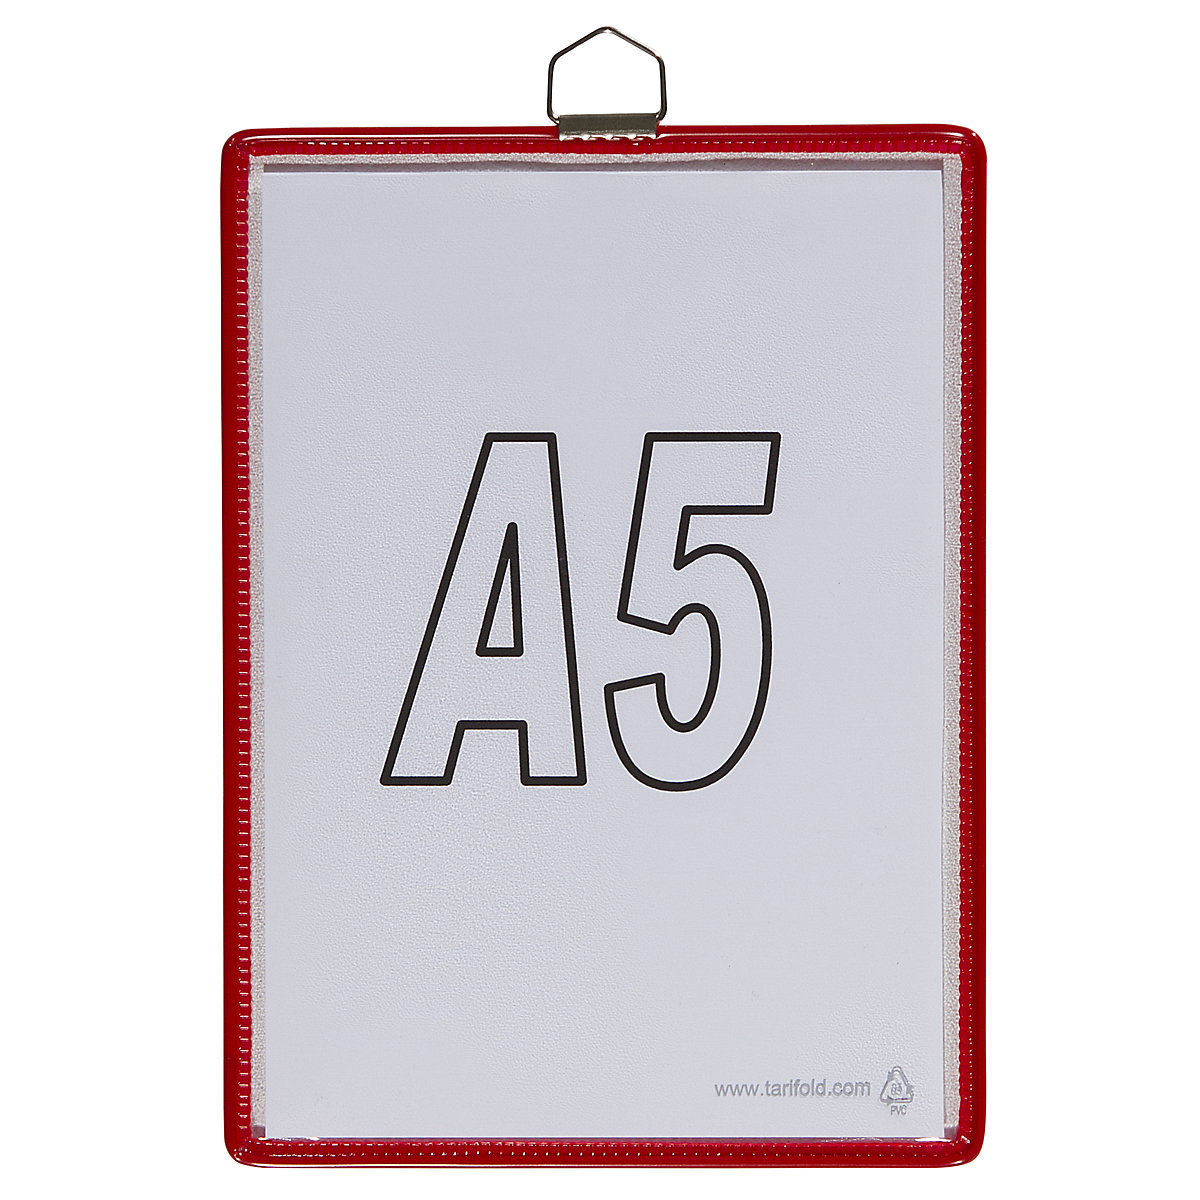 Bolsa transparente suspensa – Tarifold, para formato A5, vermelho, embalagem com 10 unidades-3